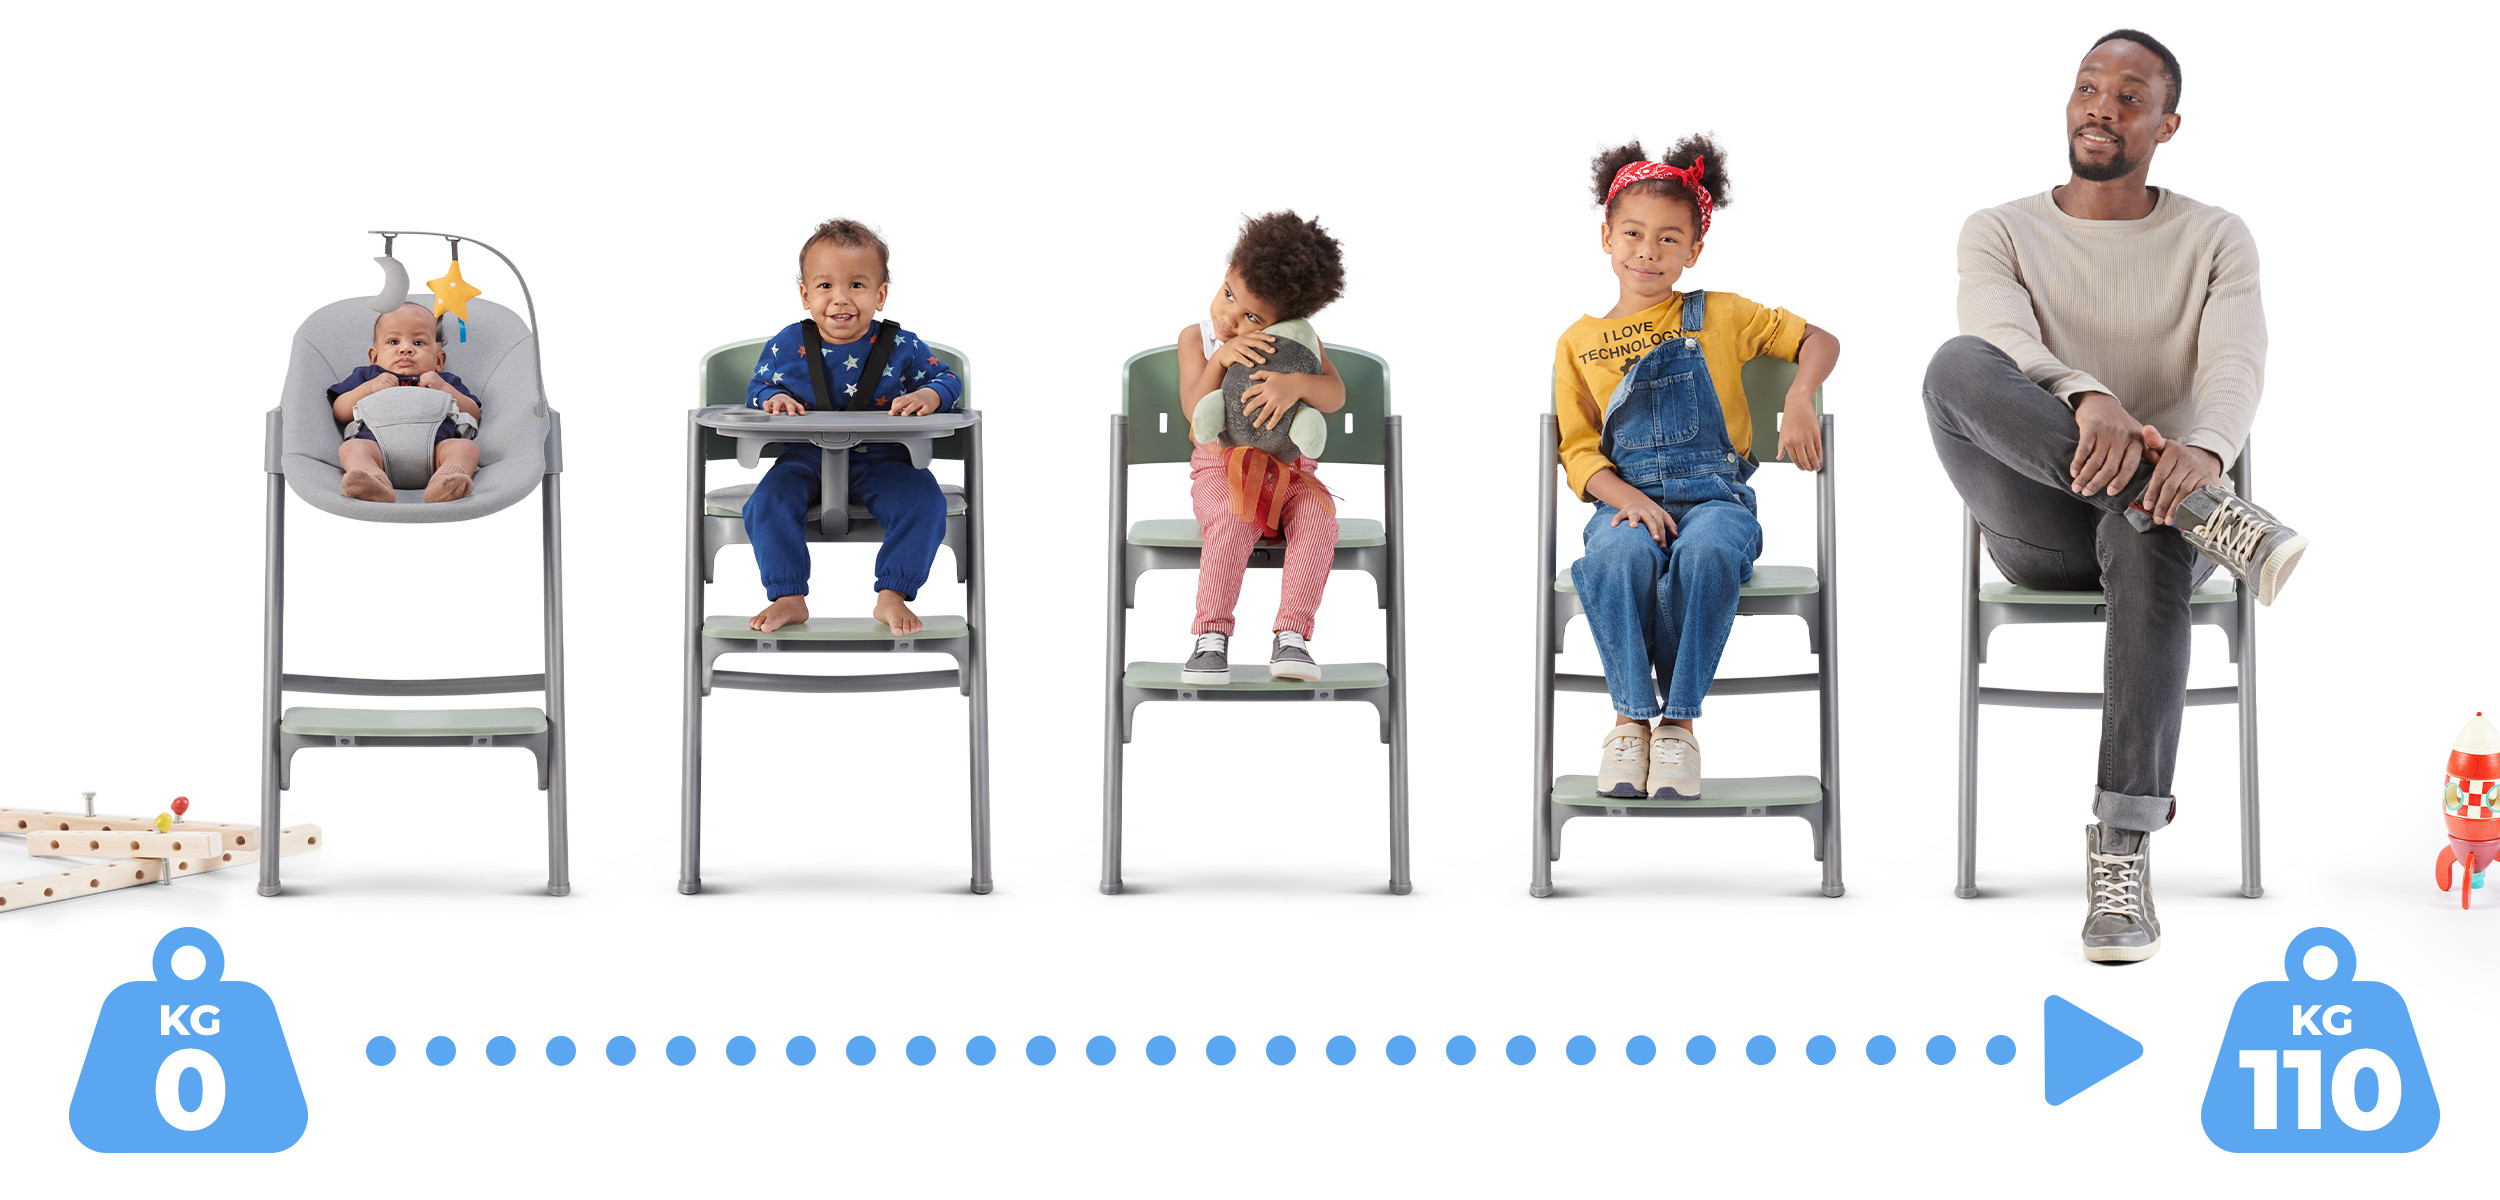 La chaise haute transat Kinderkrfat LIVY & CALMEE évolue avec votre bambin.